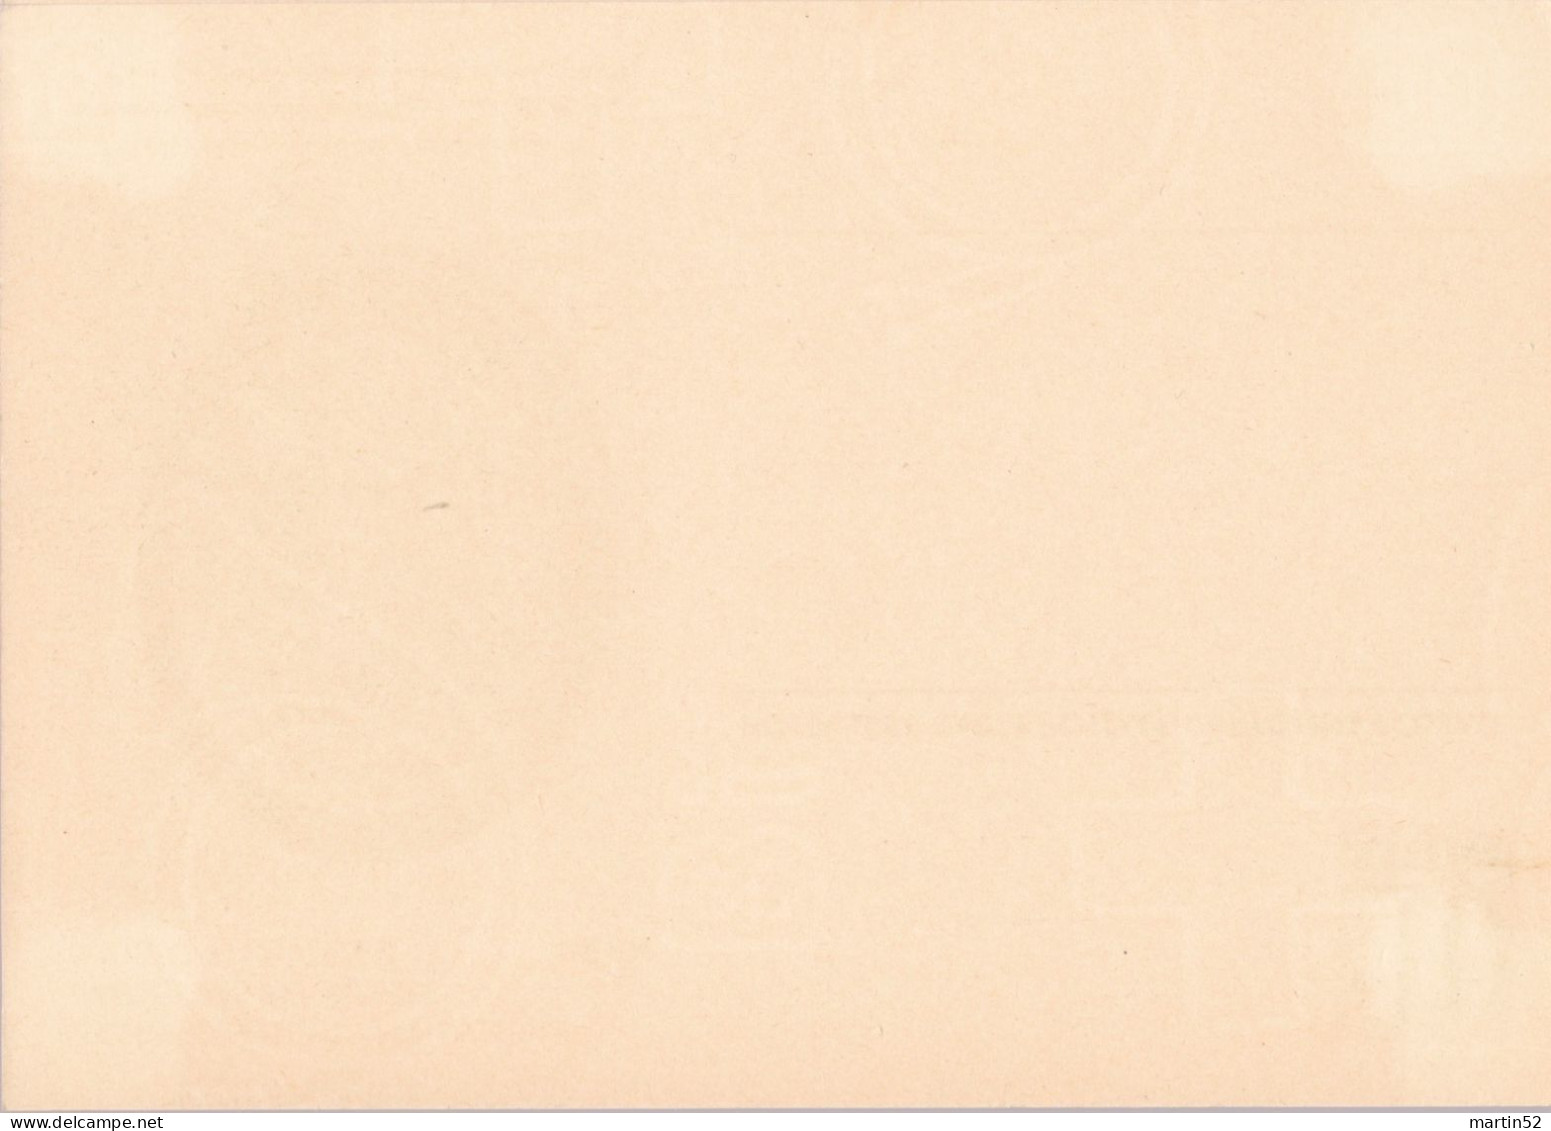 Schweiz Suisse 1950: Bild-PK POSTMUSEUM CPI MUSÉE POSTALE Zumstein-N° 183 A TELEGRAPHIE 1868 Ungelaufen / Non Circulé - Telegraph